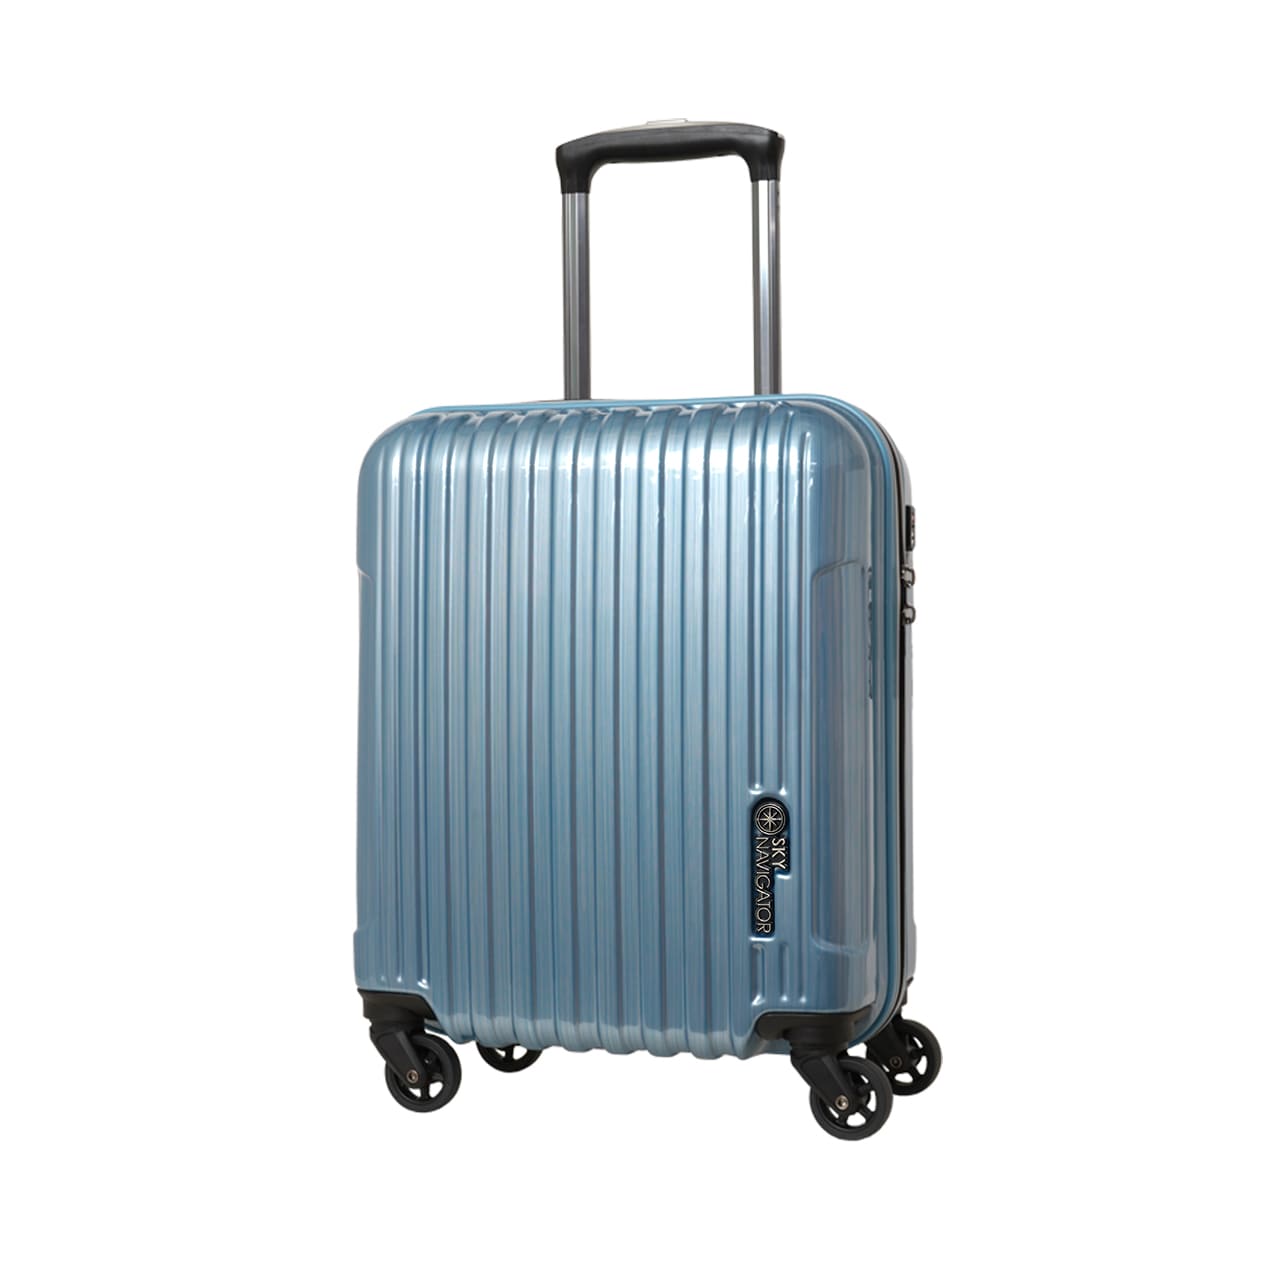 SKYNAVIGATORのスーツケースSK-0722-41のブルーヘアラインの正面振り画像